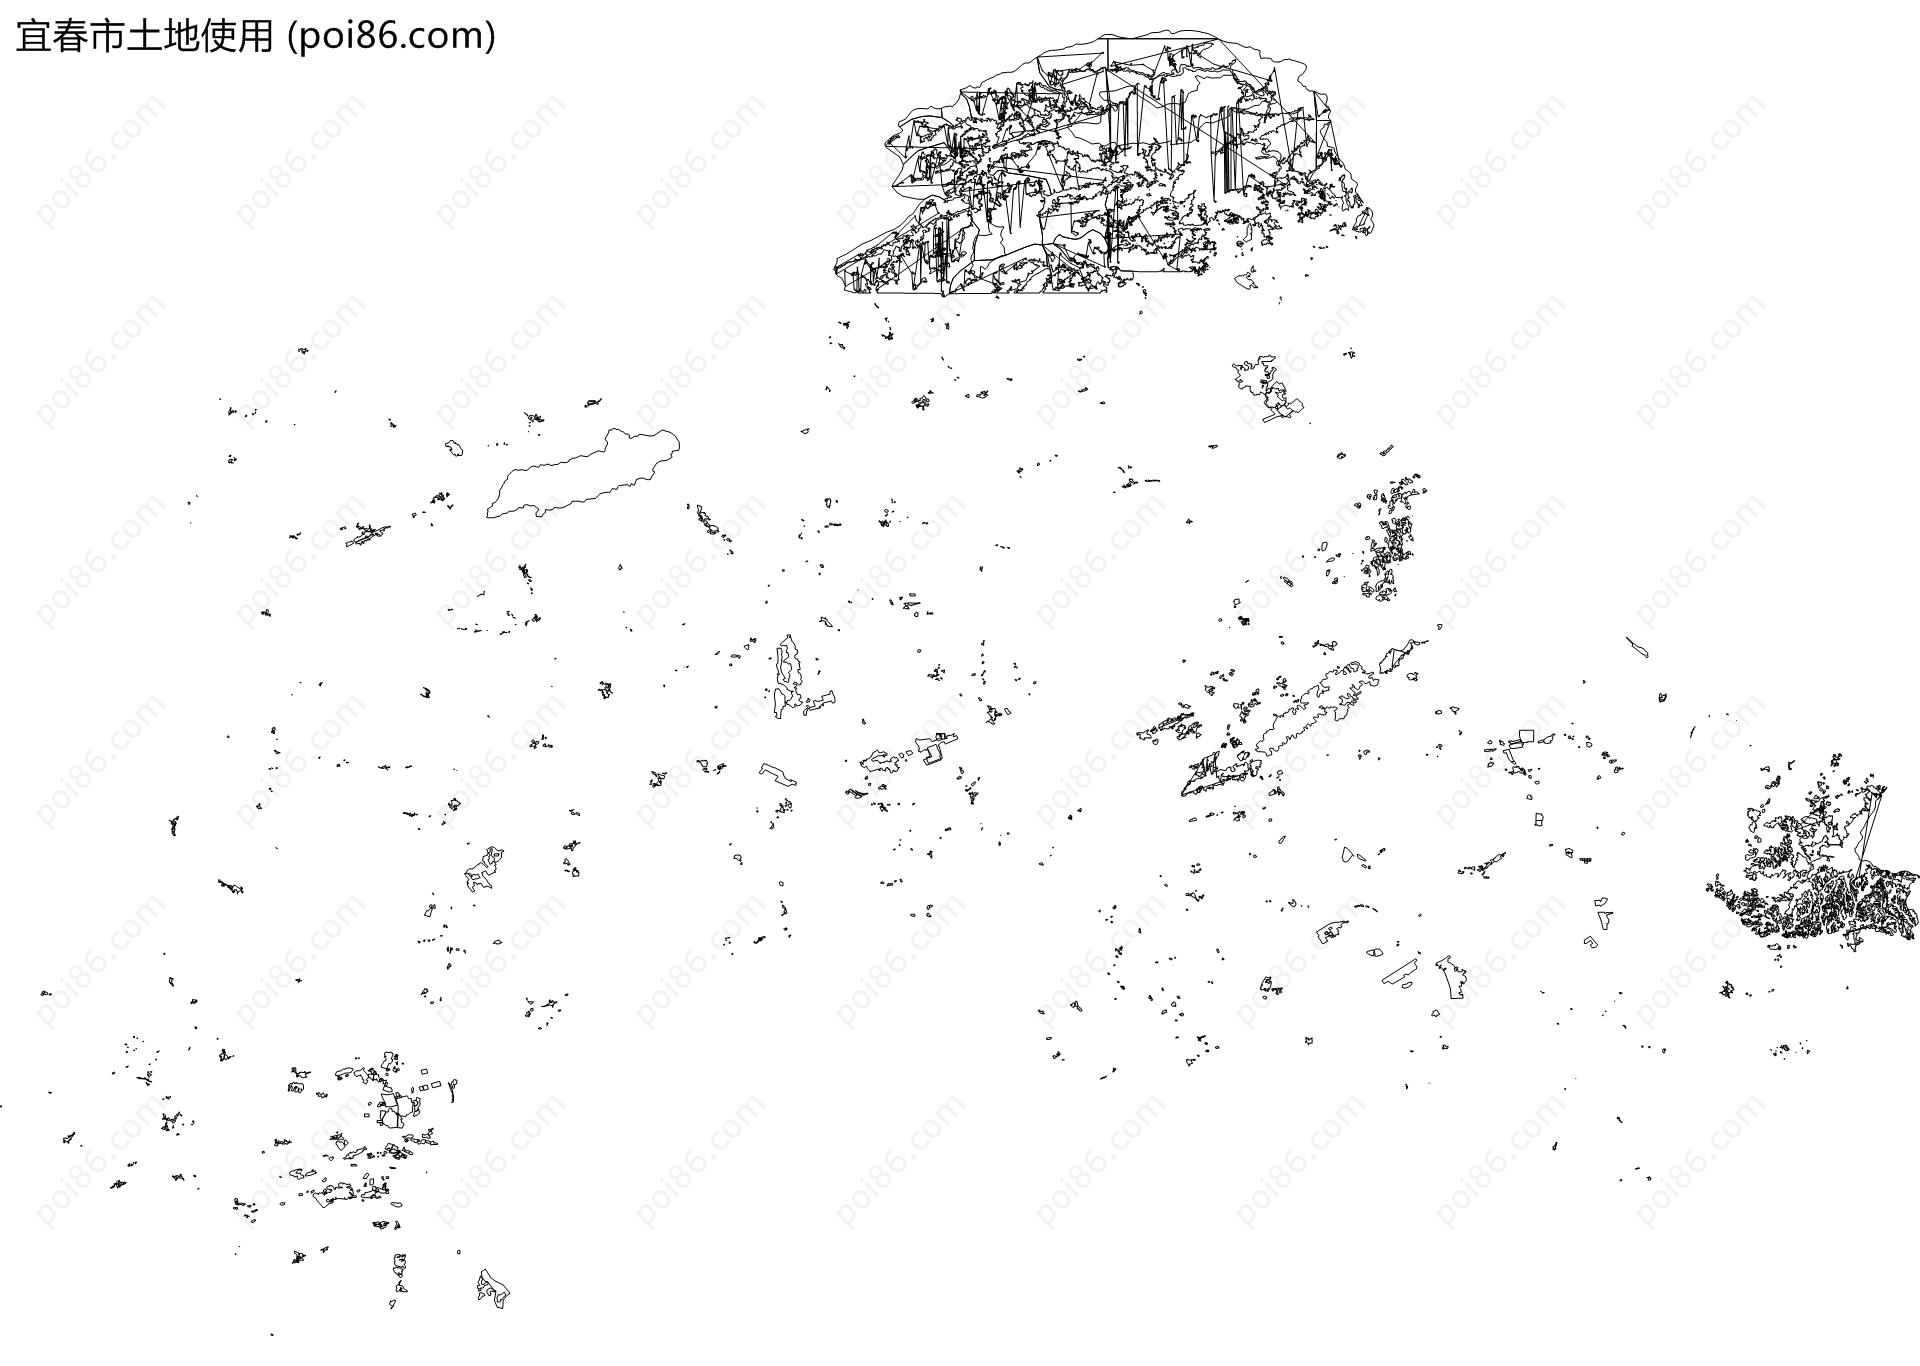 宜春市土地使用地图